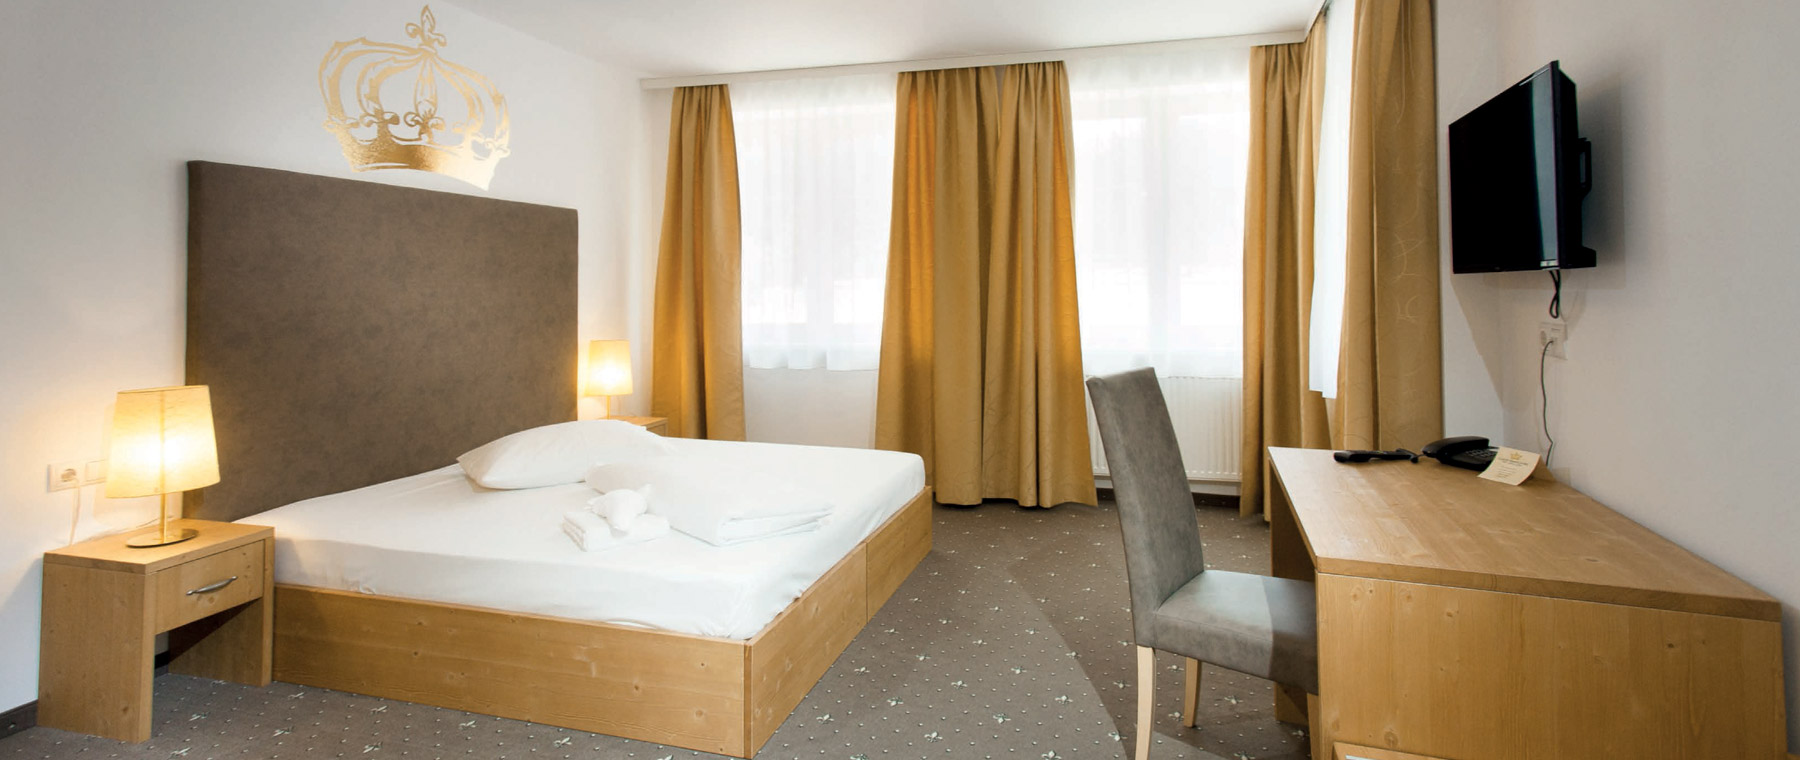 Foto Zimmer mit Bett, Schreibtisch & TV im Hotel Kaiser Franz Josef